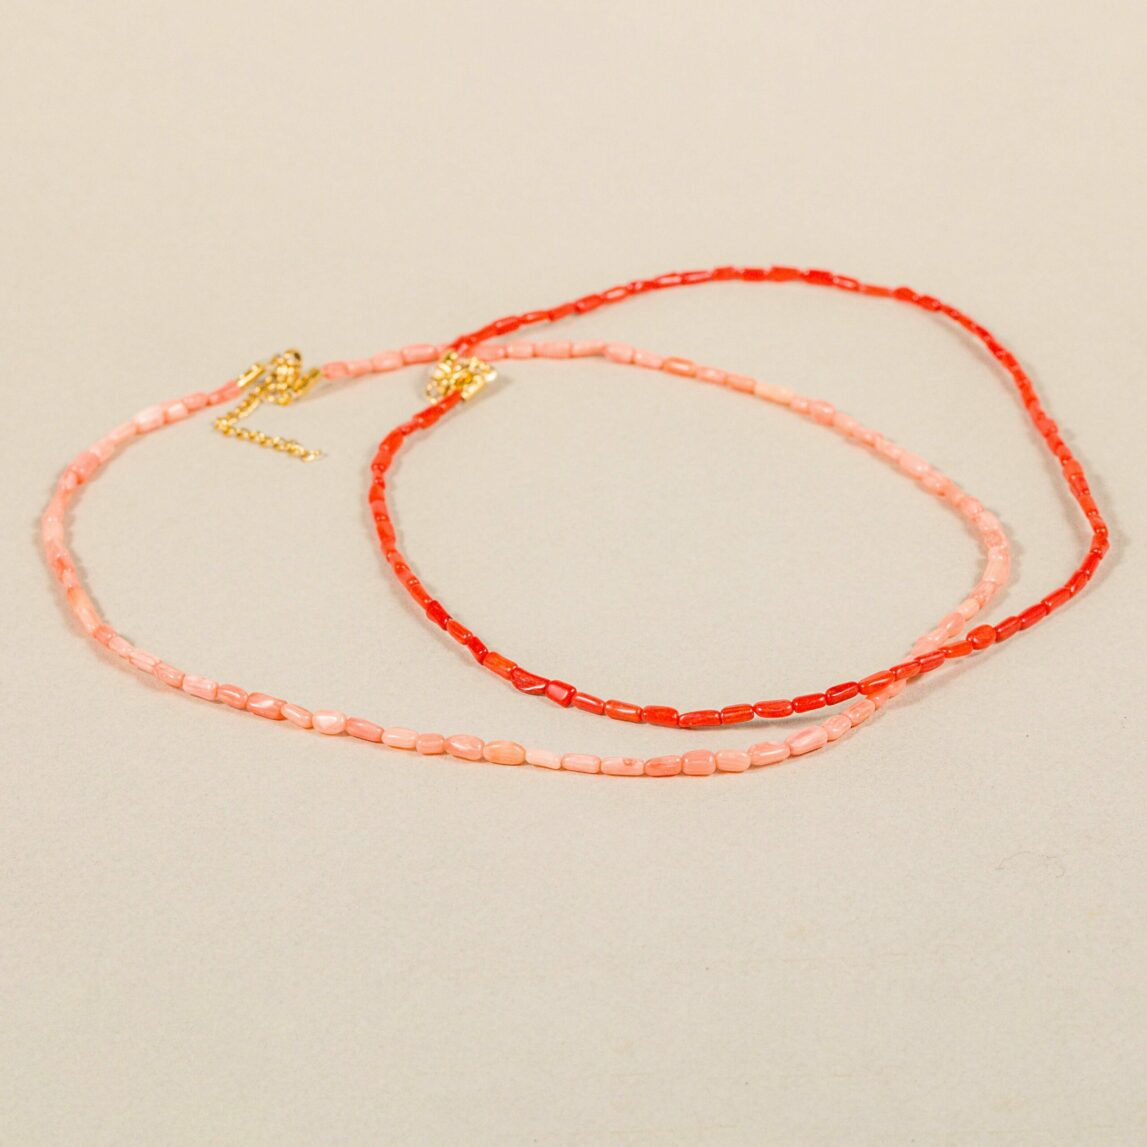 El Collar Sabinillas será tu imprescindible de este verano. Es una pieza formada con piedras de coral alargadas y planas en rojo o salmón.